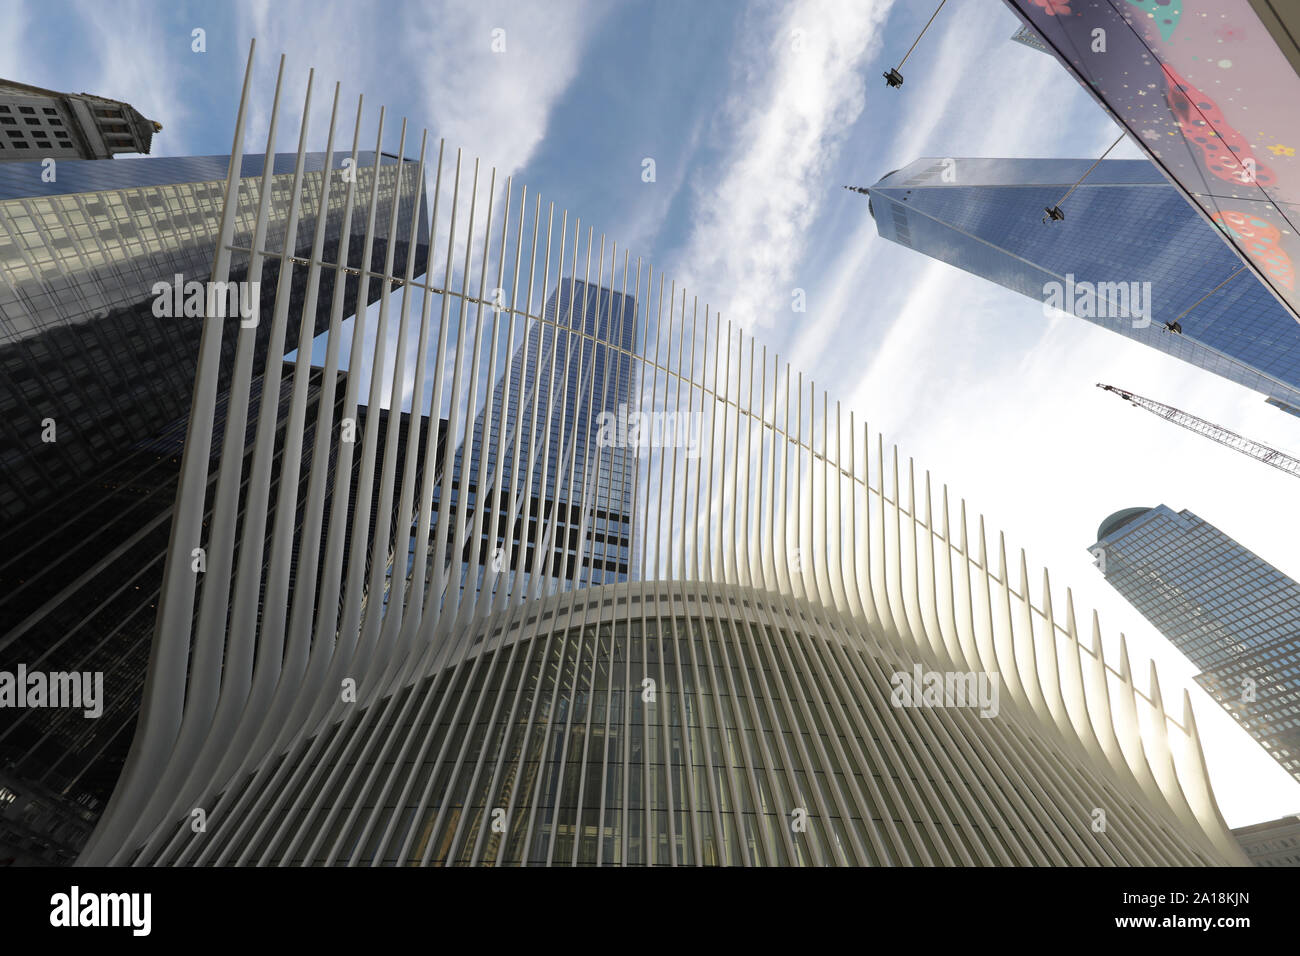 L'Occhio di Calatrava a New York. Treno che attraversa la Hudson per comunicare New York con lo stato confinante del New Jersey Foto Stock